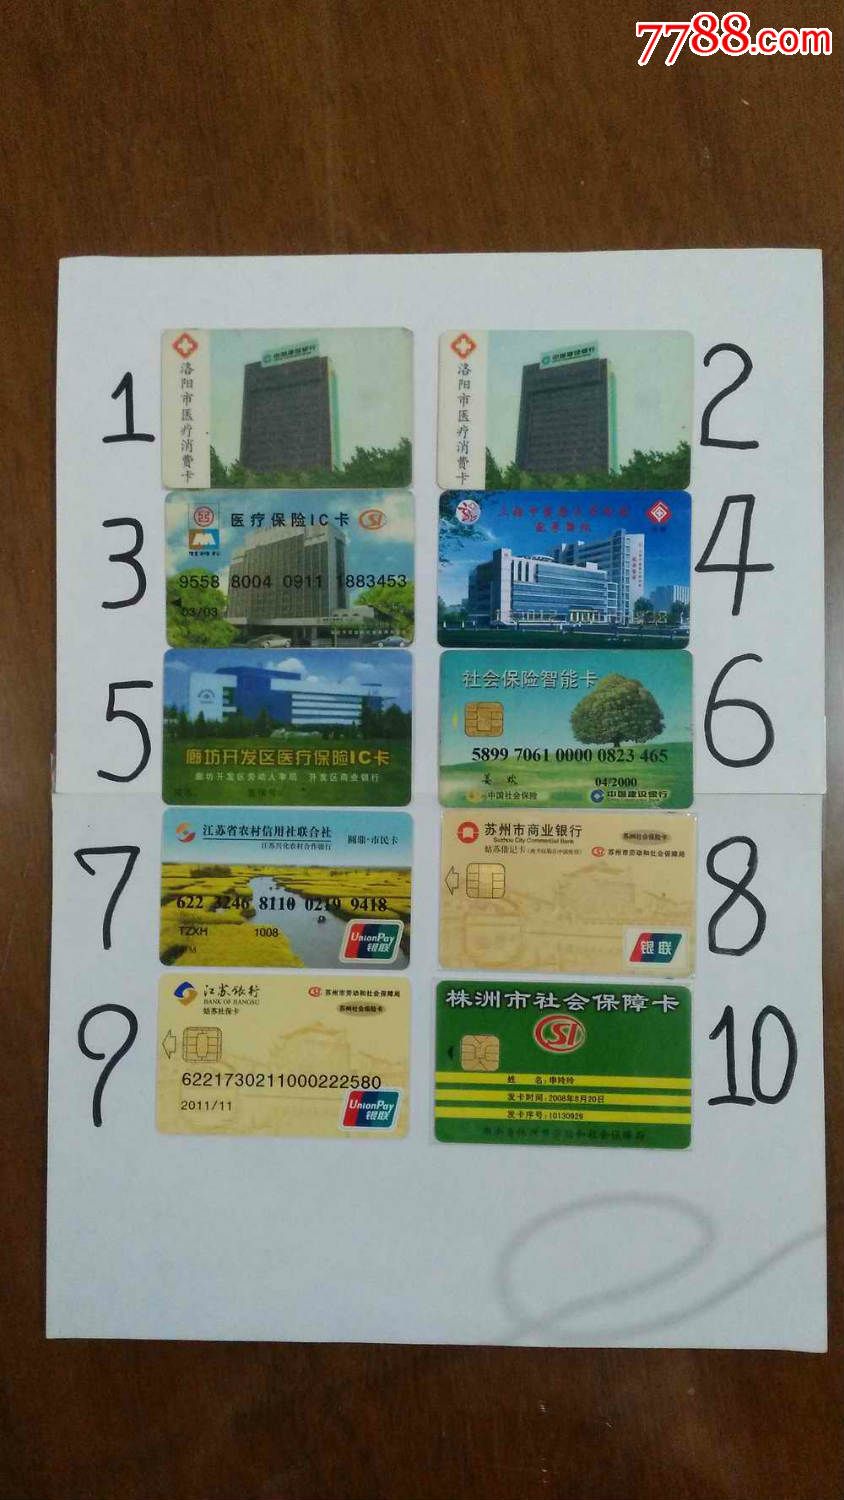 金华市民卡图片